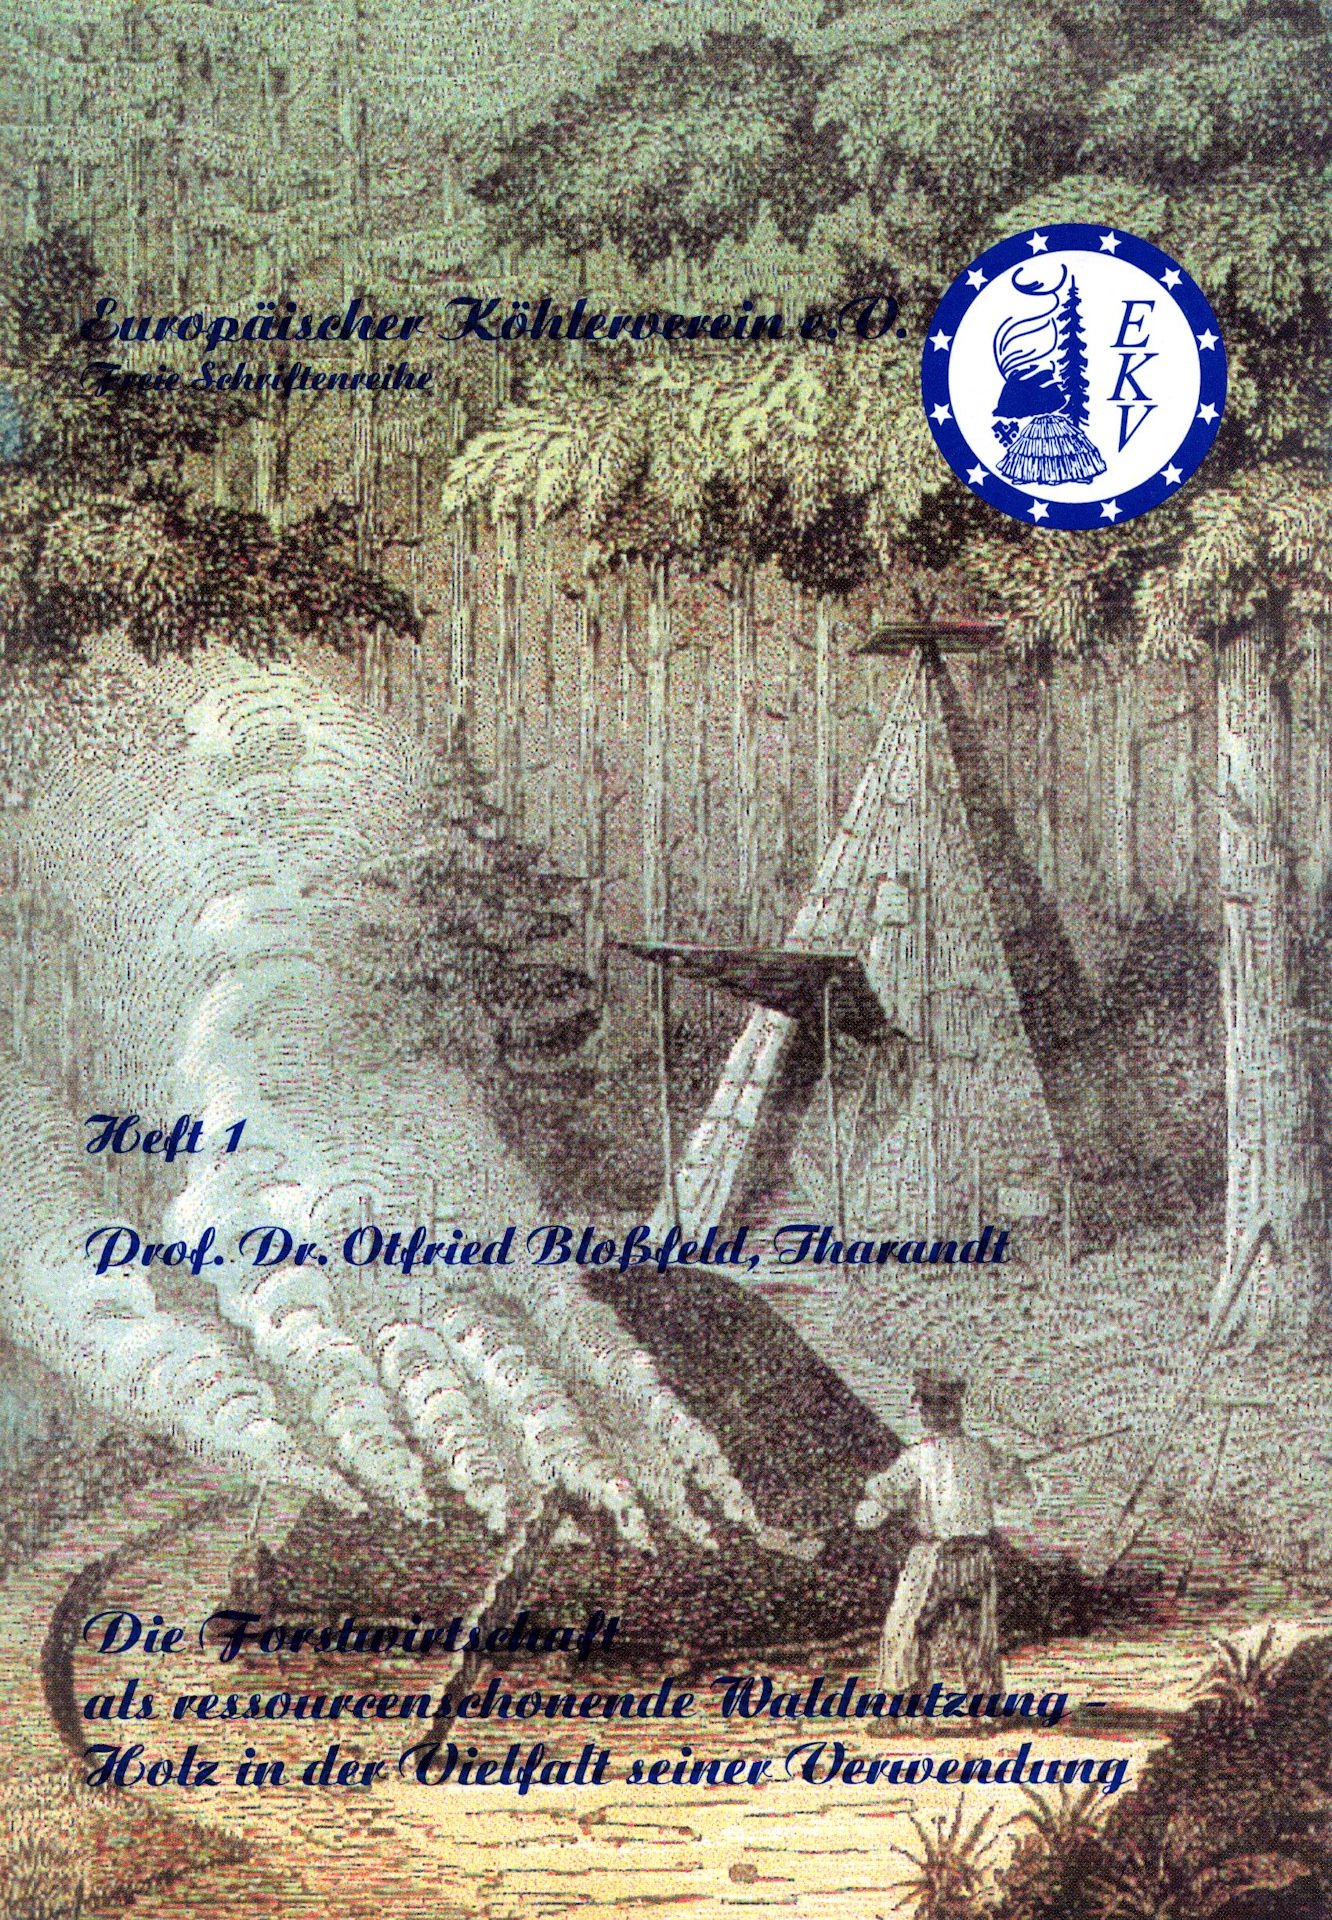 Originaltitel: Heft 1: Prof. Dr. Otfried Bloßfeld (Tharandt): Die Forstwirtschaft als ressourcenschonende Waldnutzung – Holz in der Vielfalt seiner Verwend (Saxonia-Freiberg-Stiftung CC BY-NC-SA)